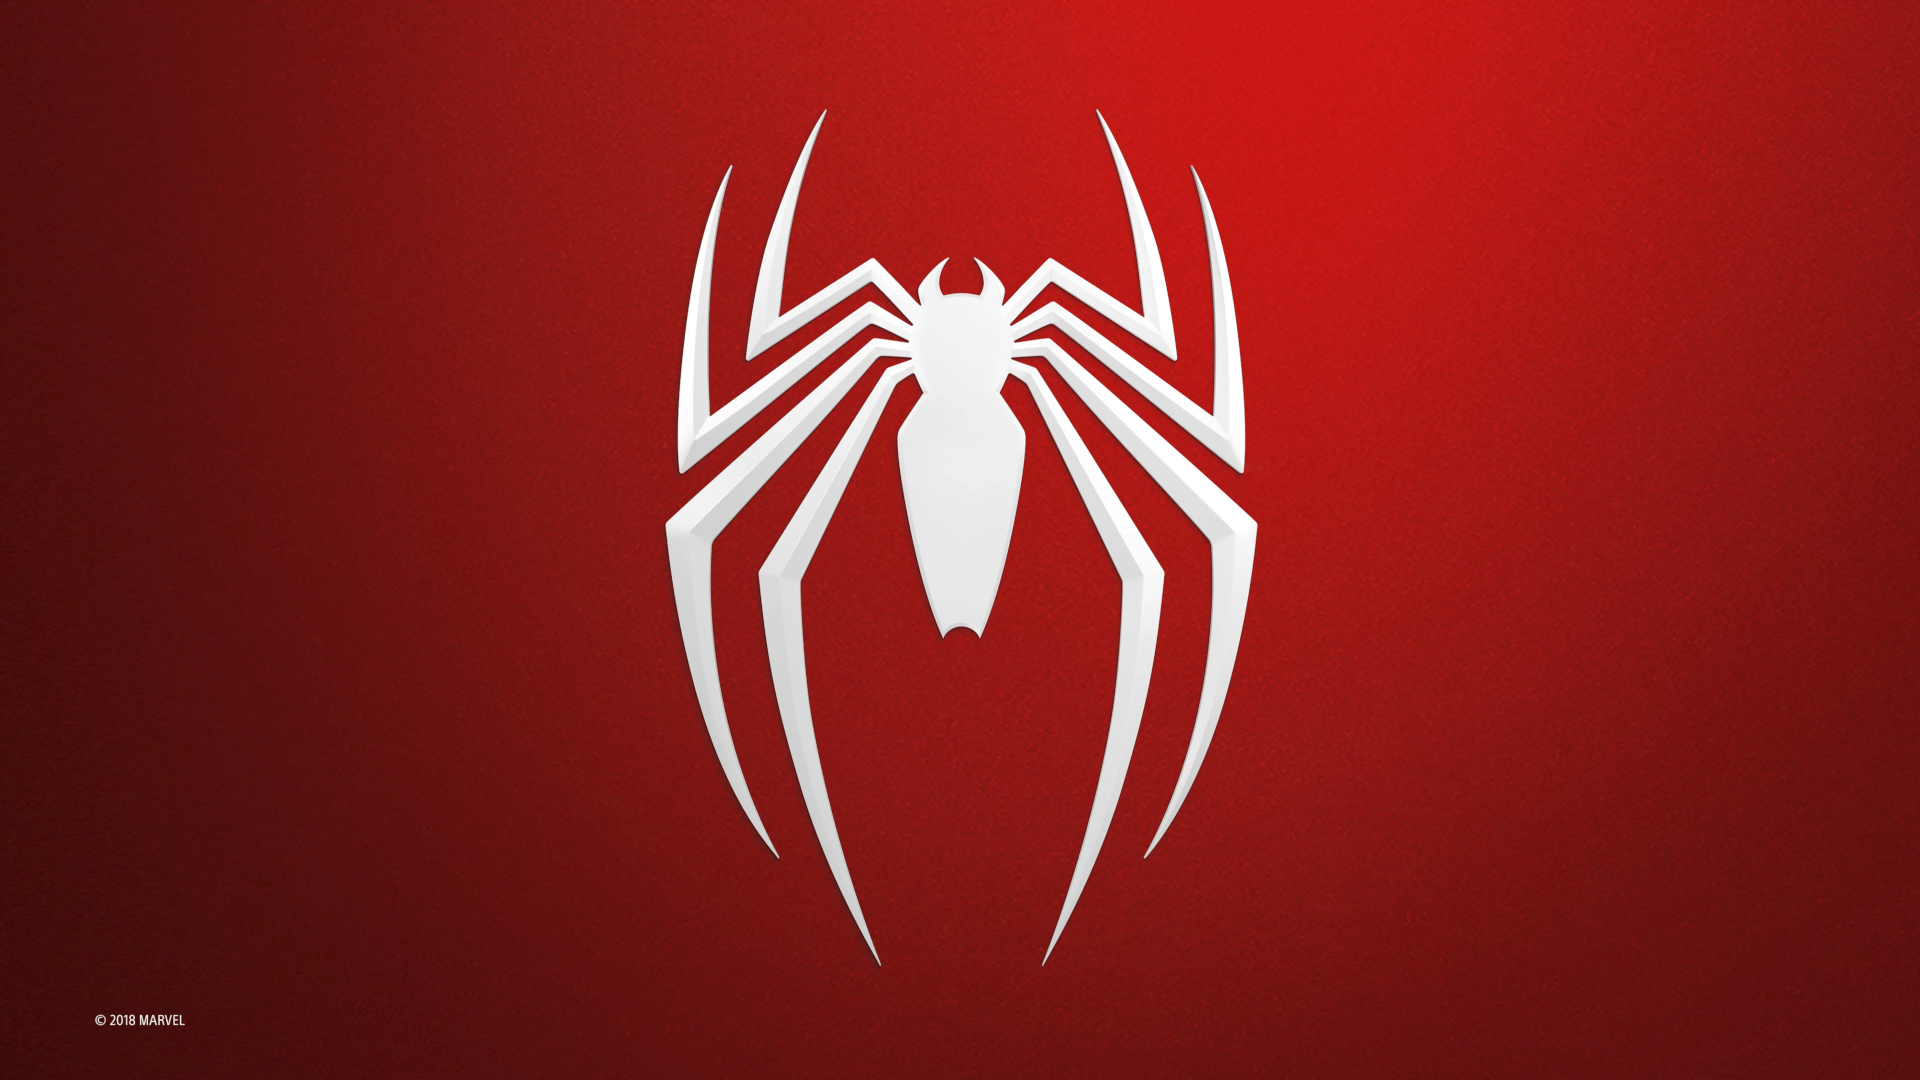 Spider Man Spider Man 2018 Simple Background Minimalism Logo 1920x1080